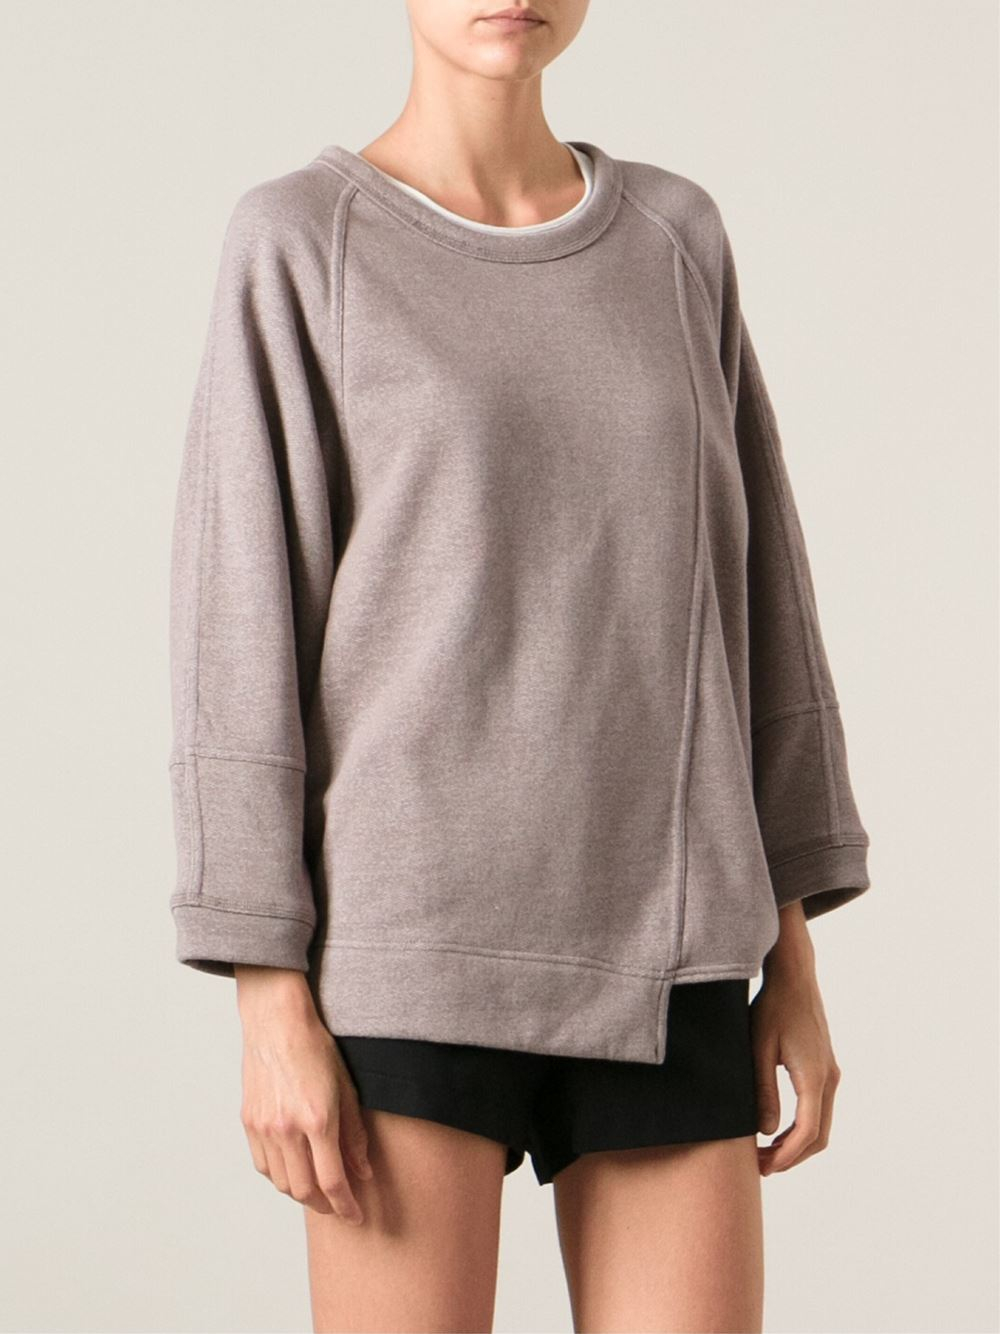 adidas By Stella McCartney Asymmetric Sweatshirt in Natural - Lyst